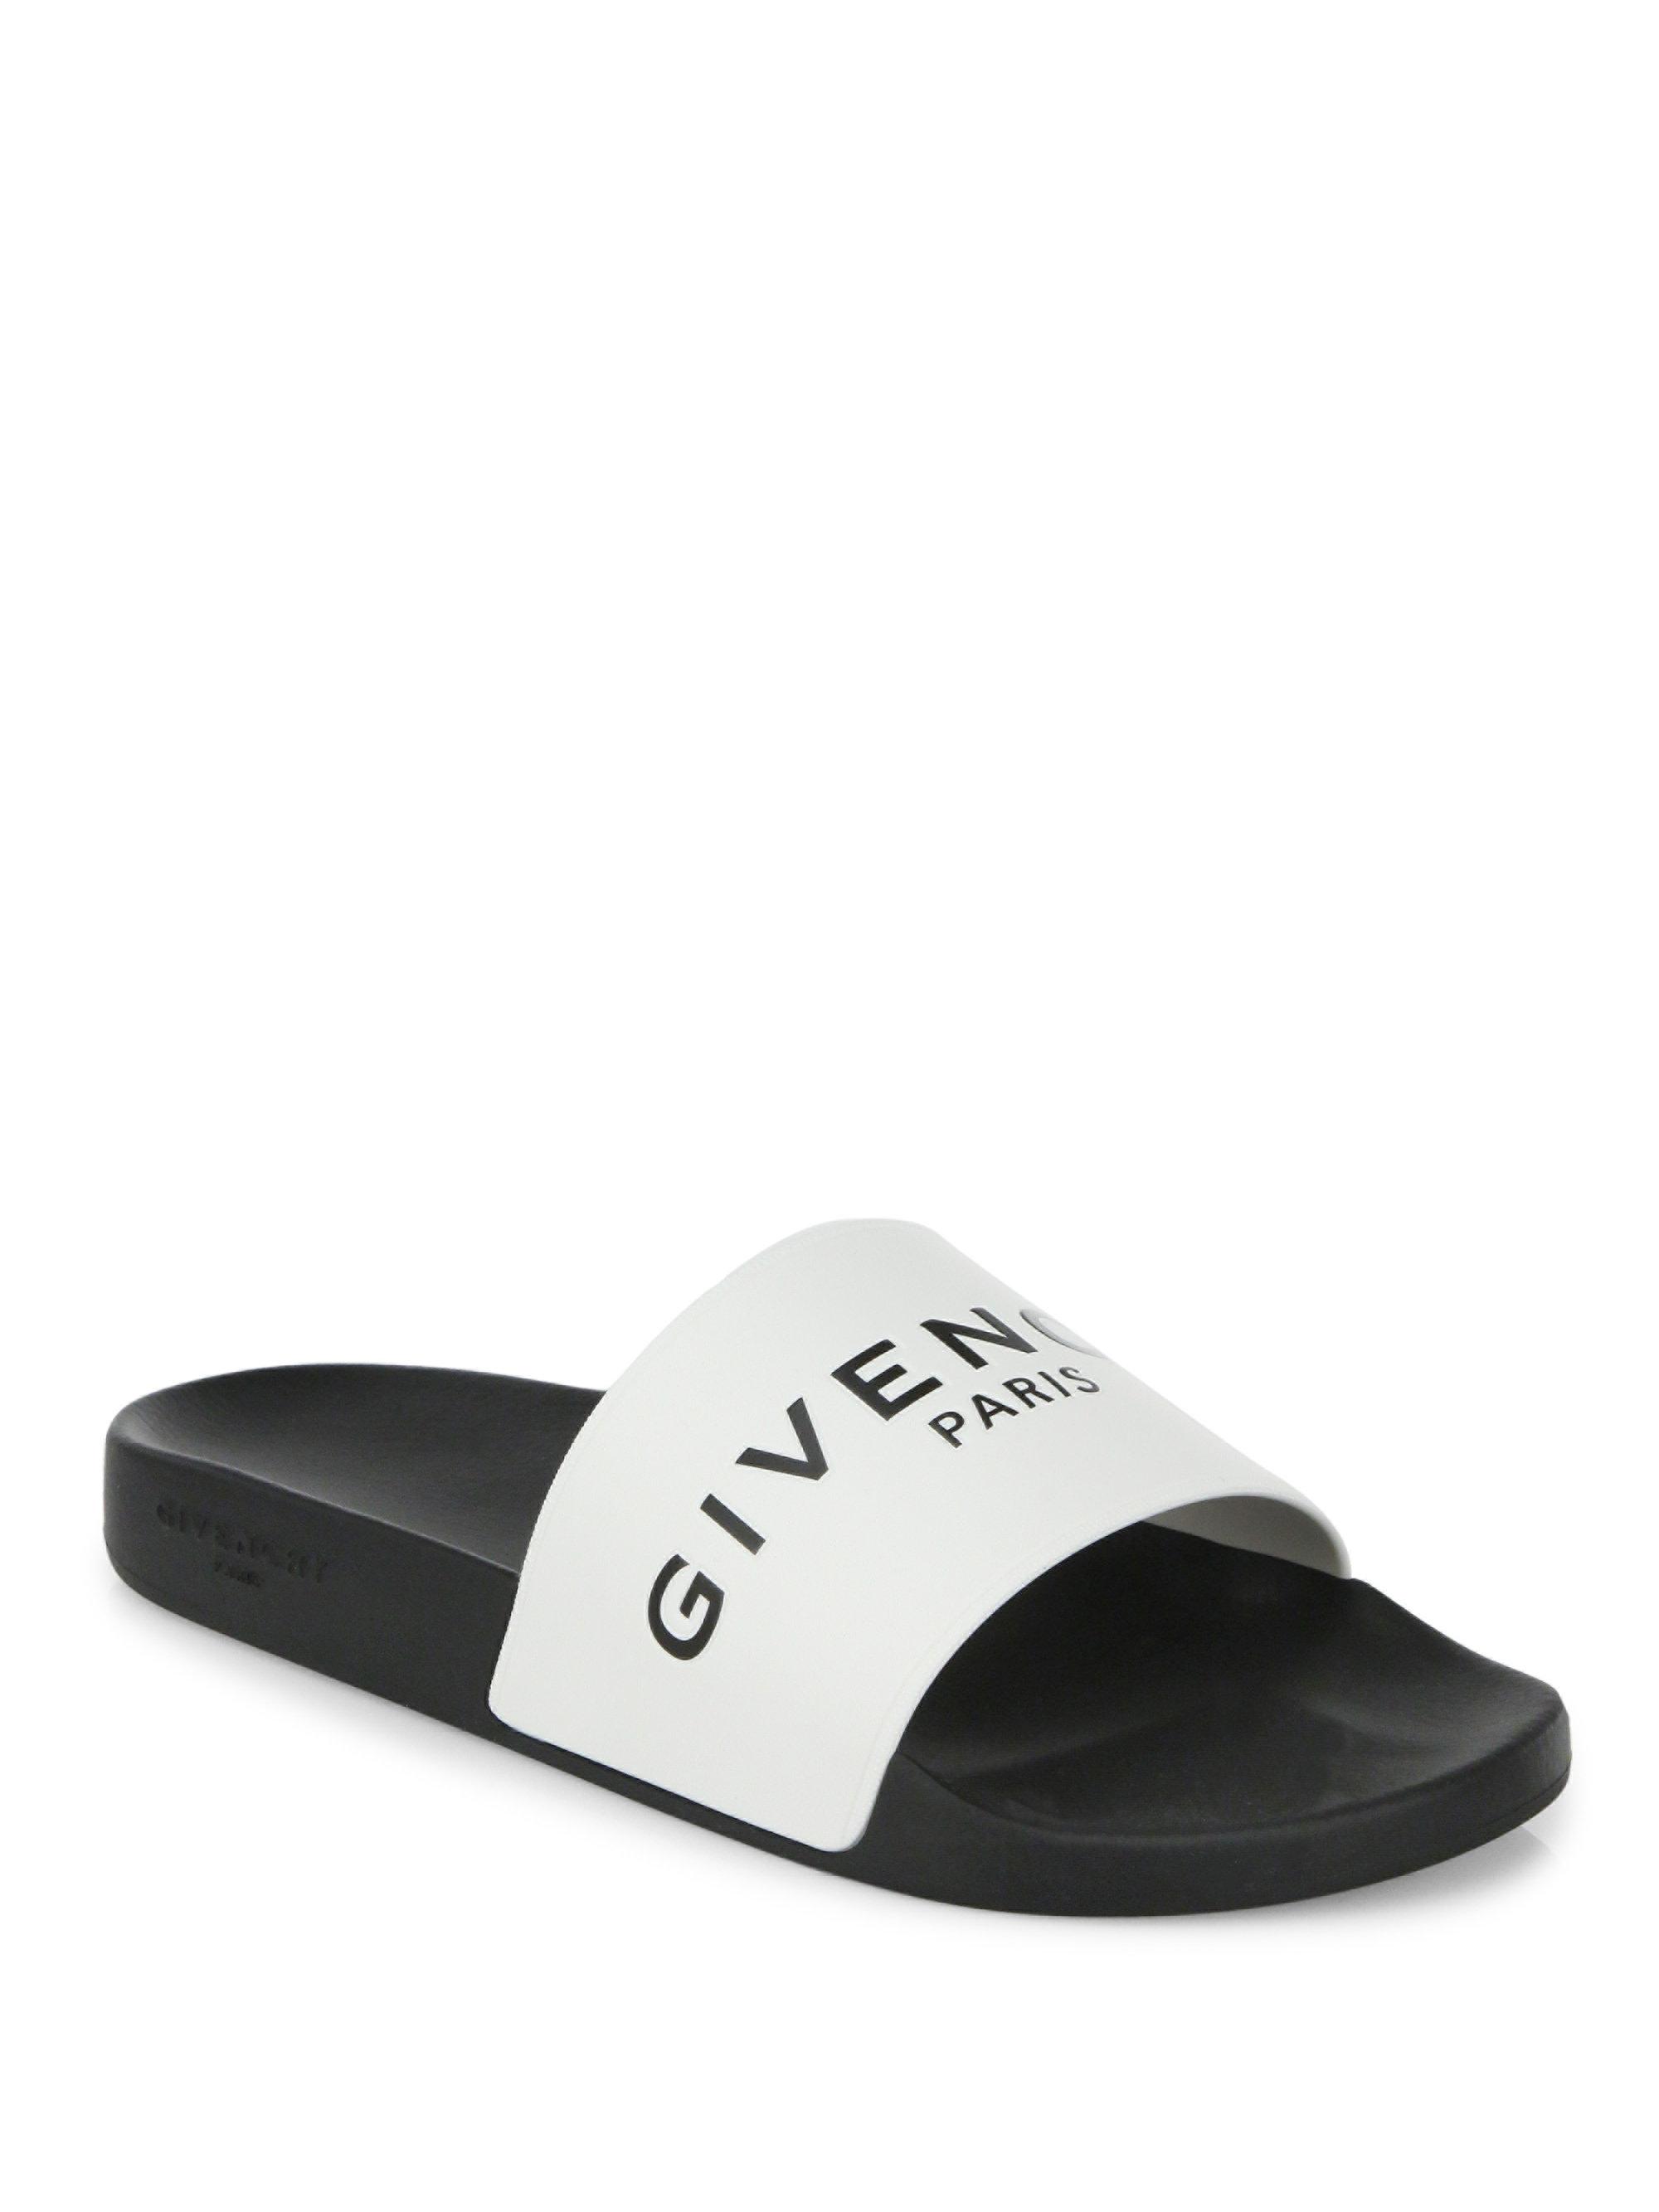 givenchy men's slide sandals